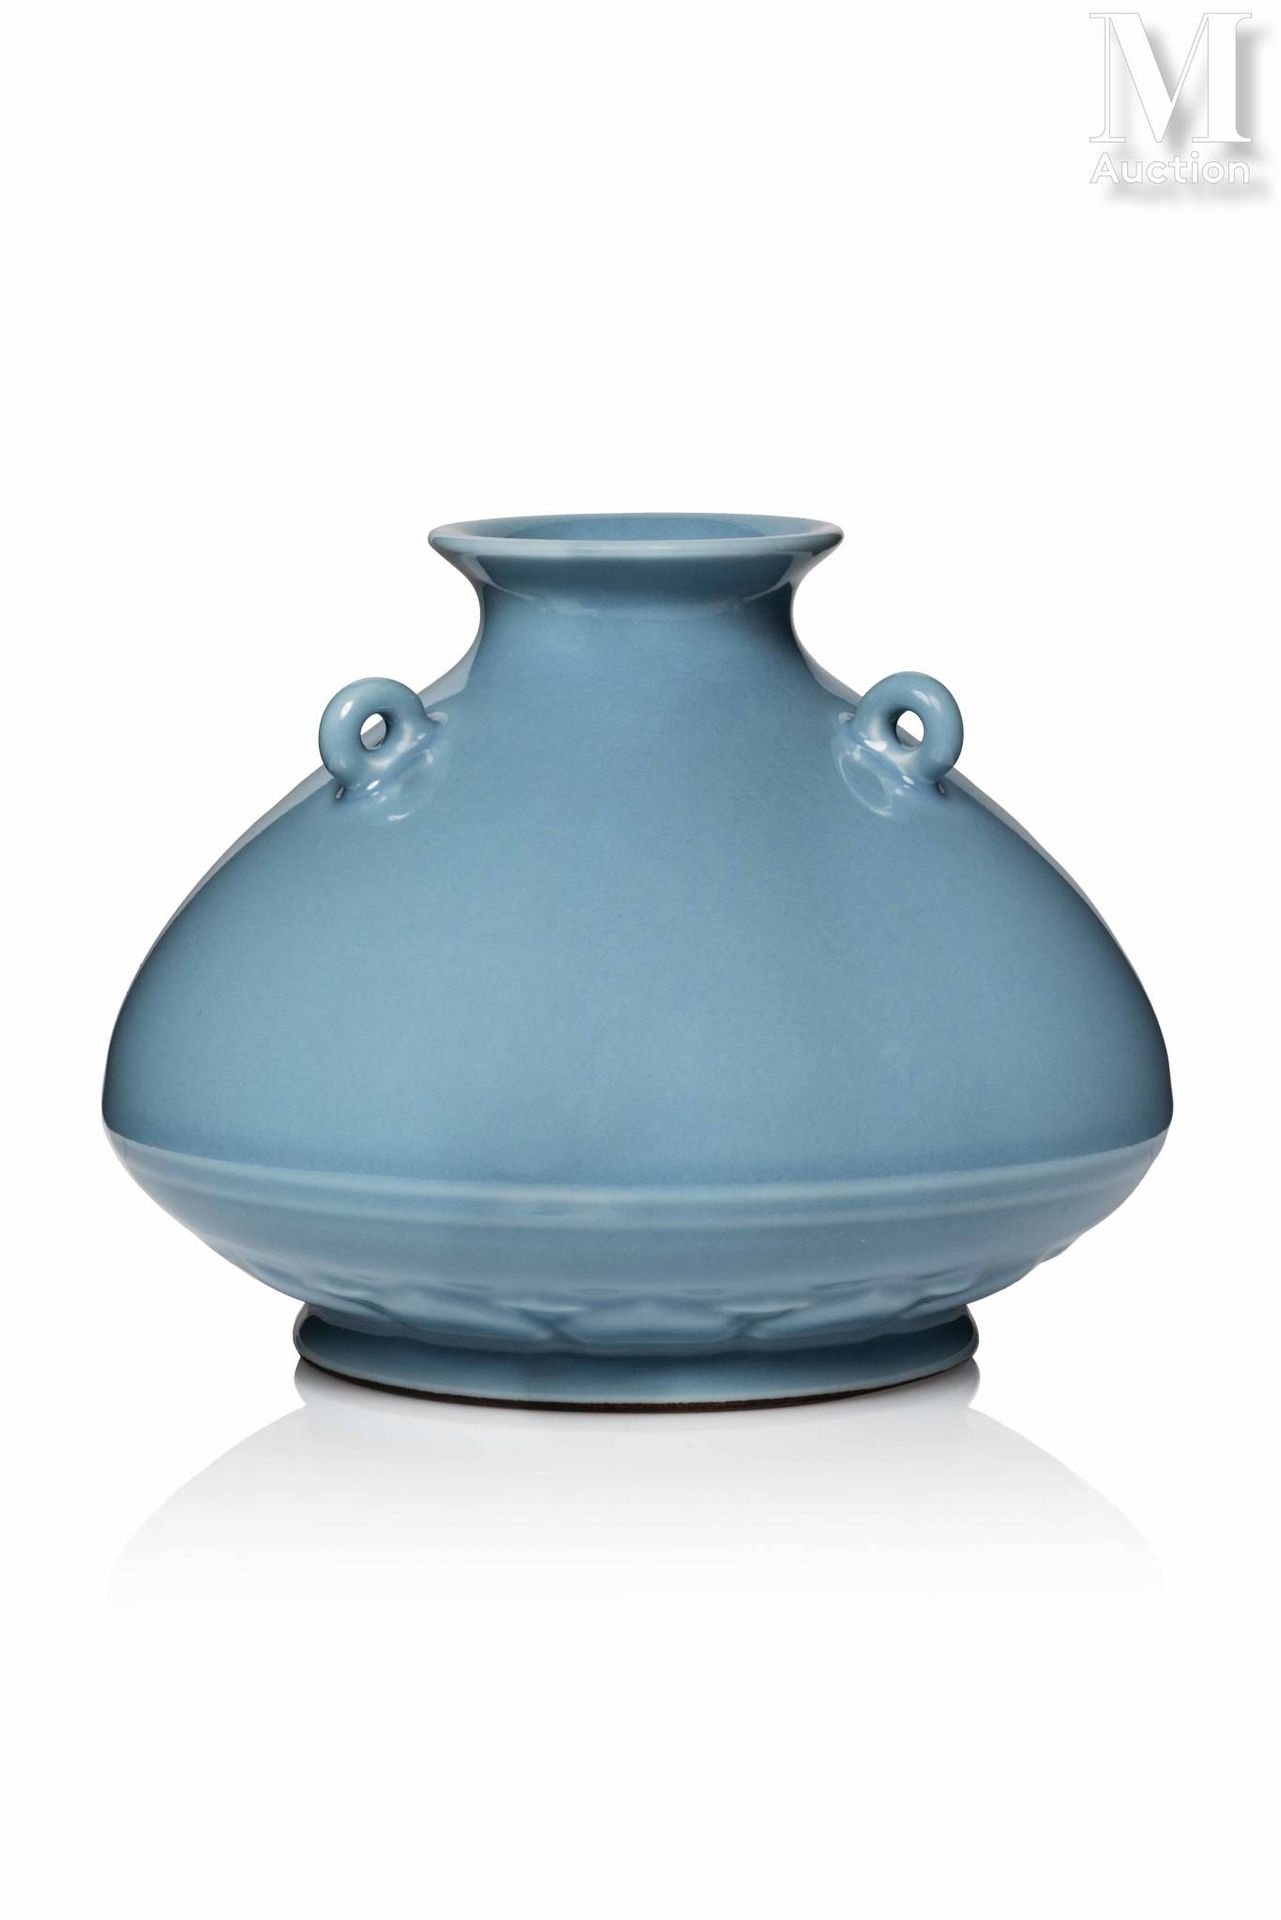 CHINE, Marque et epoque Yongzheng, XVIIIe siècle 罕见而重要的瓷器花瓶

装在一个小脚上，卵圆形的身体，肩部有三&hellip;